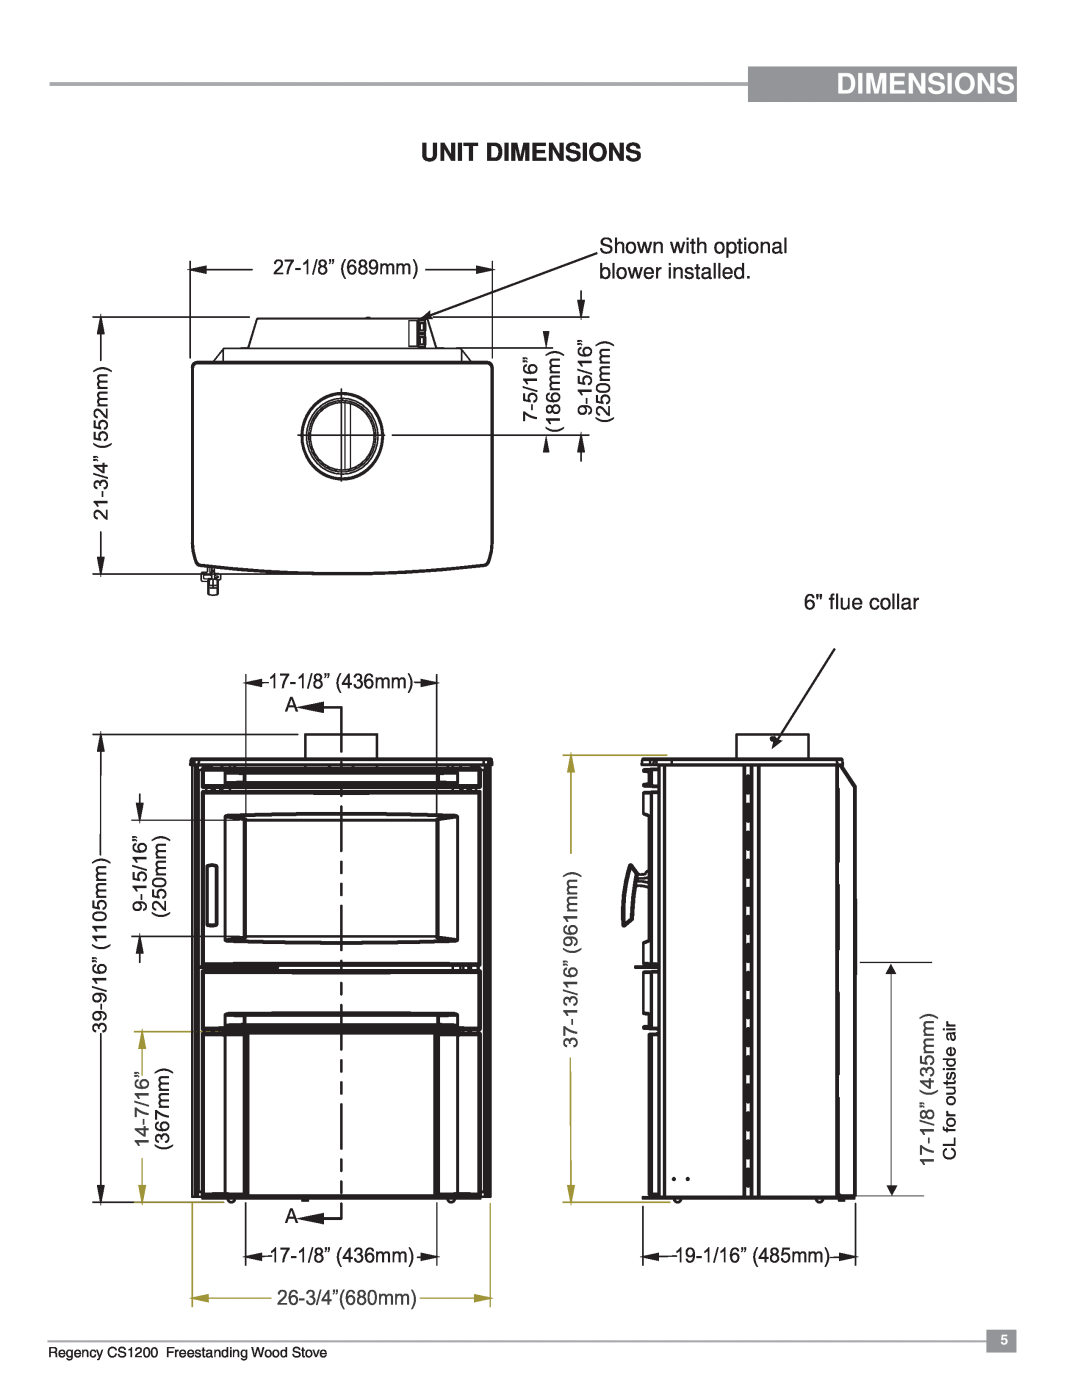 Regency CS1200 installation manual Unit Dimensions, 961mm, 37-13/16”, 14-7/16”, 26-3/4”680mm, 17-1/8”435mm 